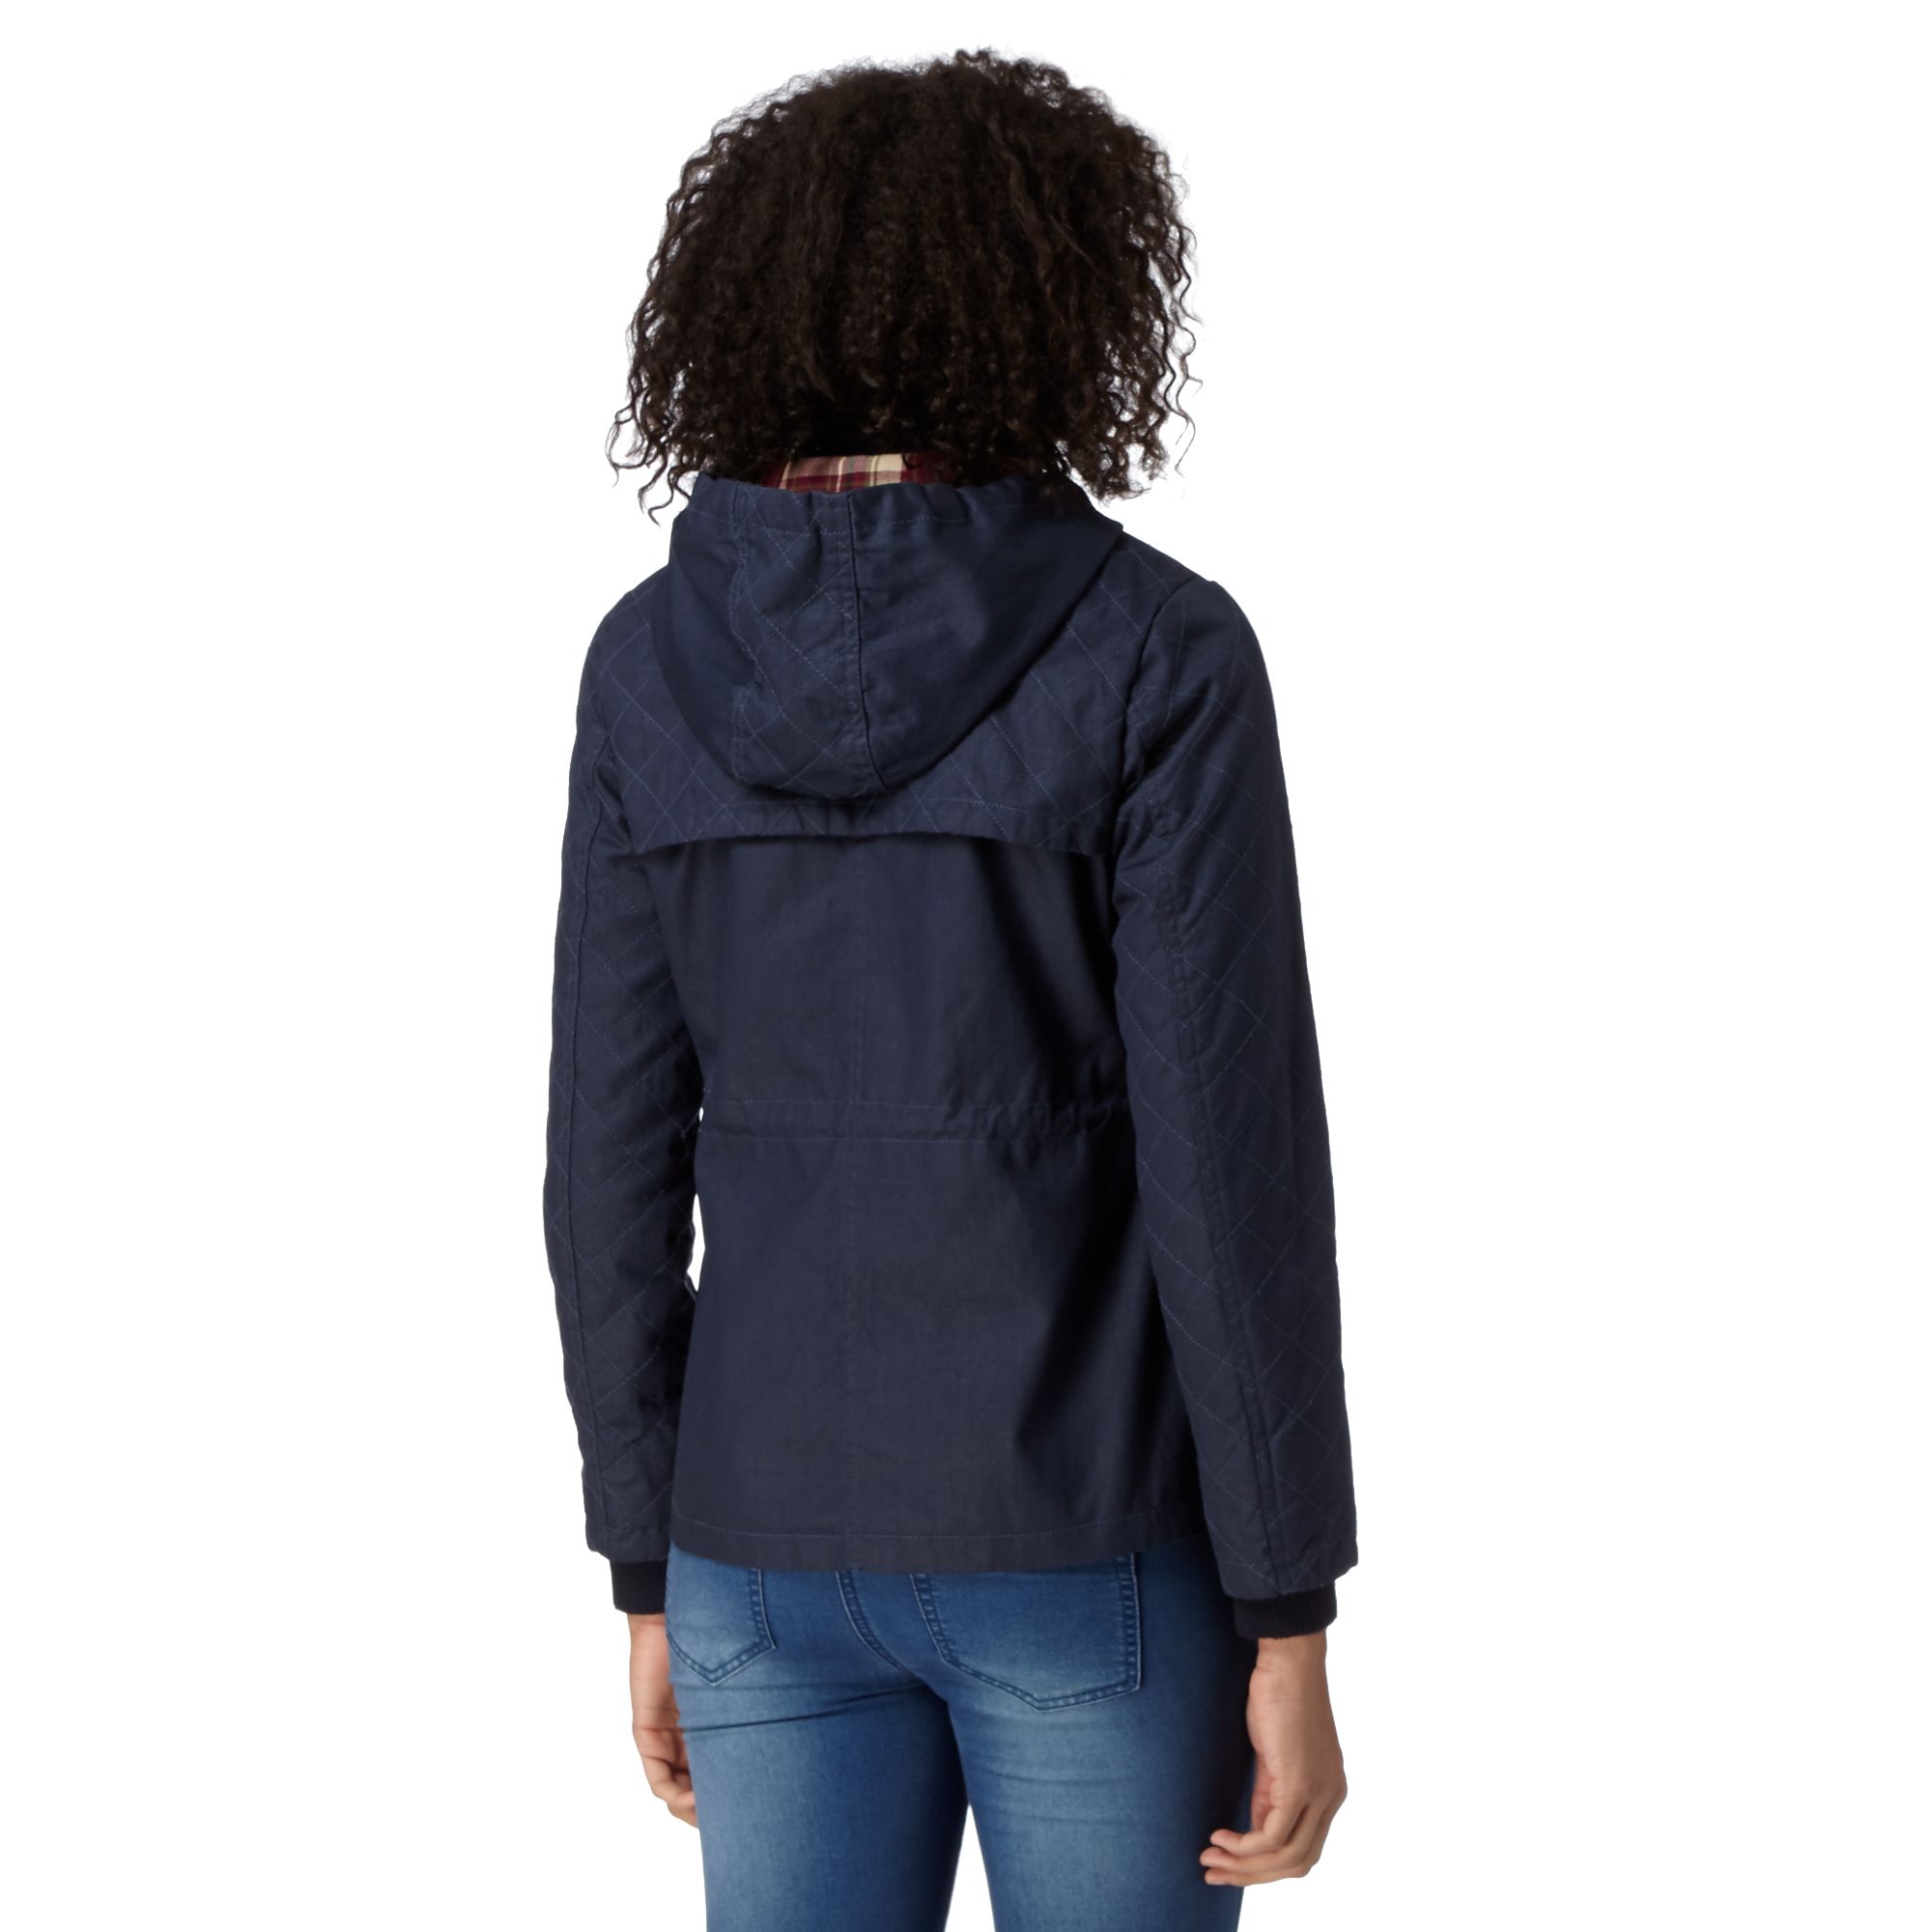 Mantaray Womens Navy Quilted Hooded Wax Jacket From Debenhams | eBay